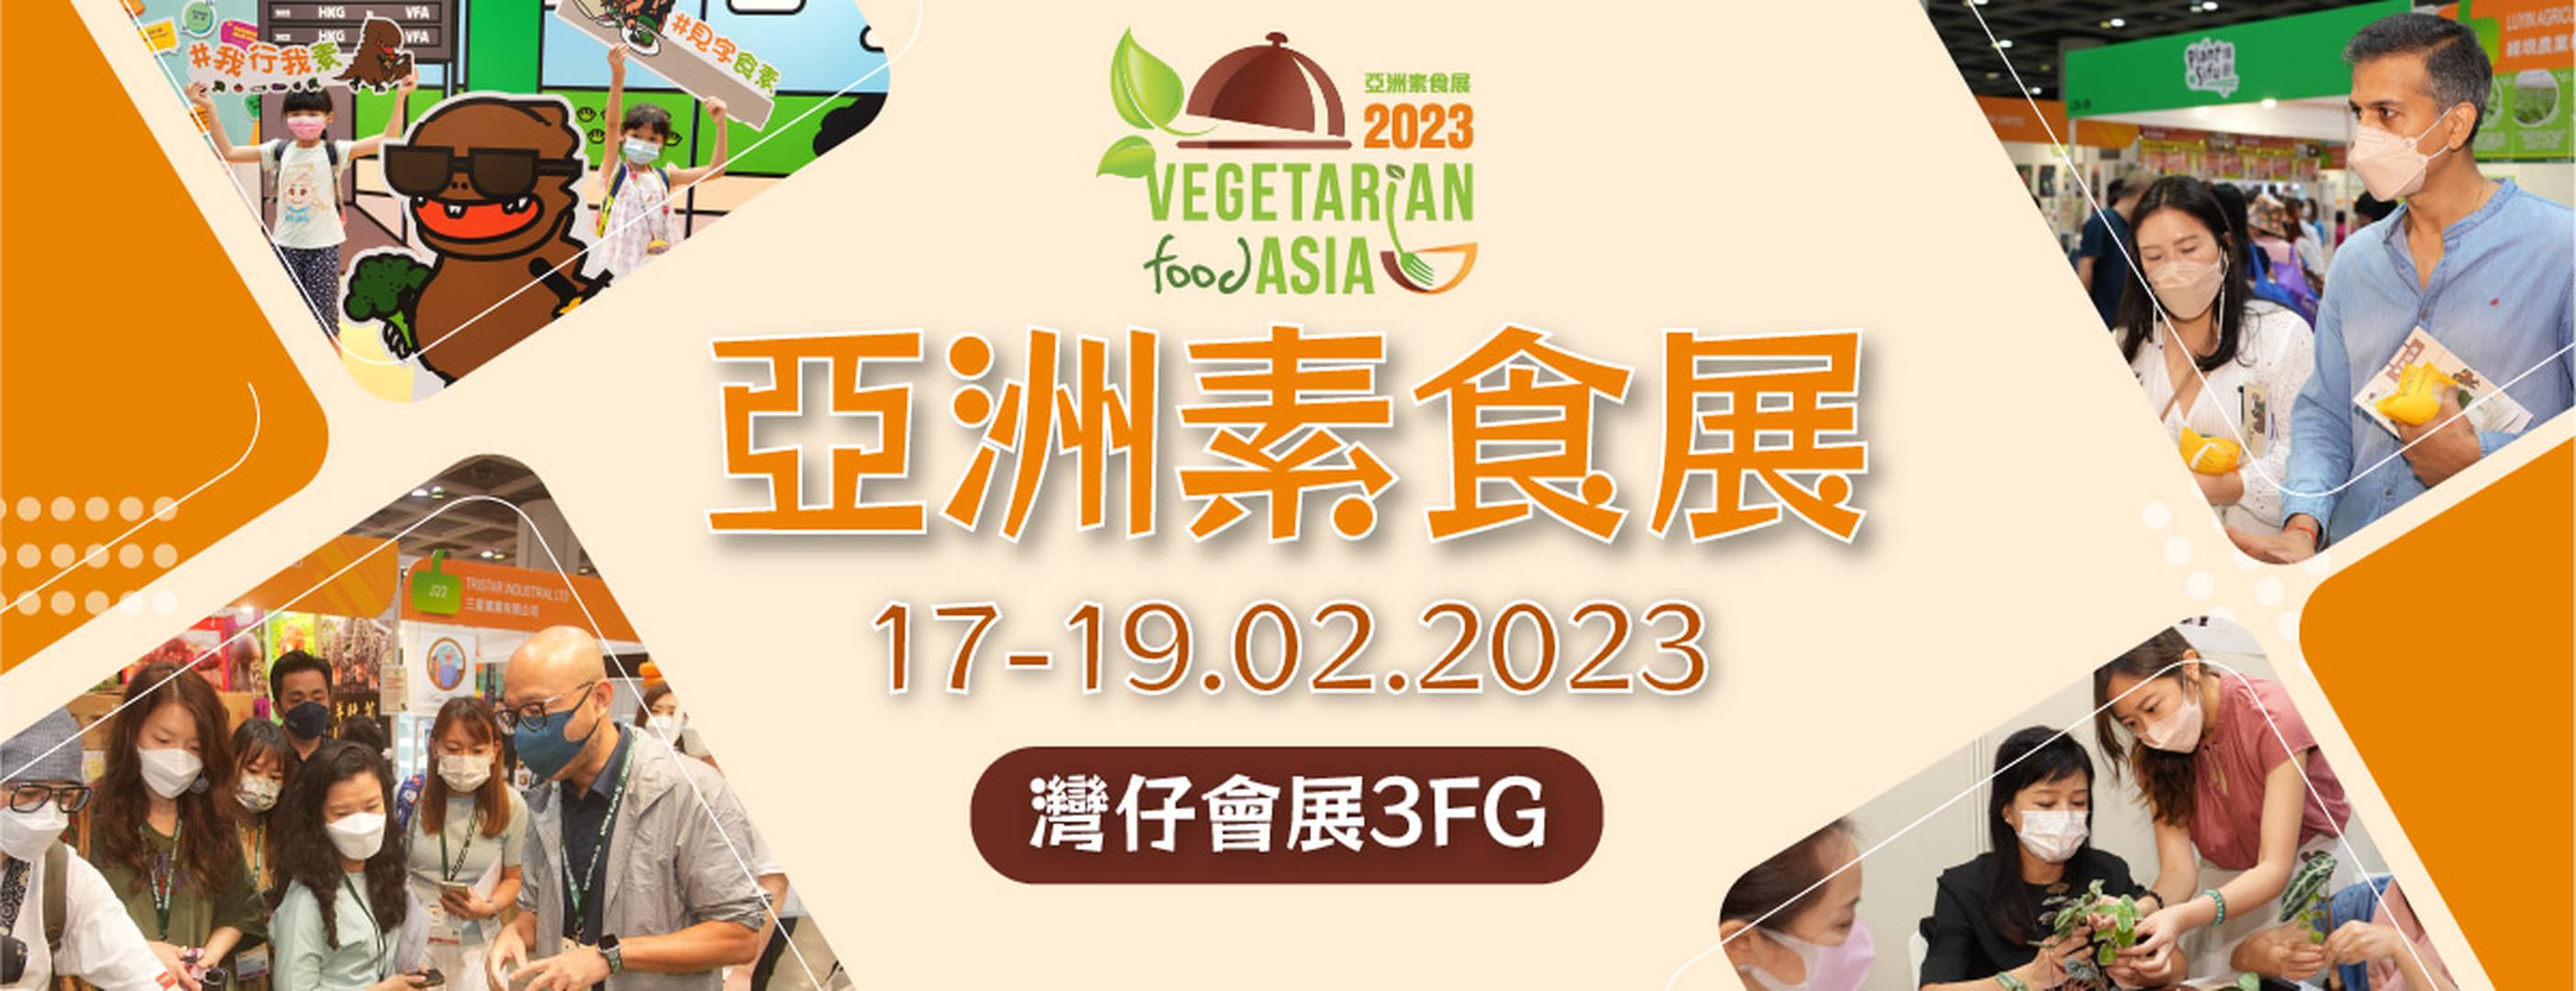 亞洲素食展 2023